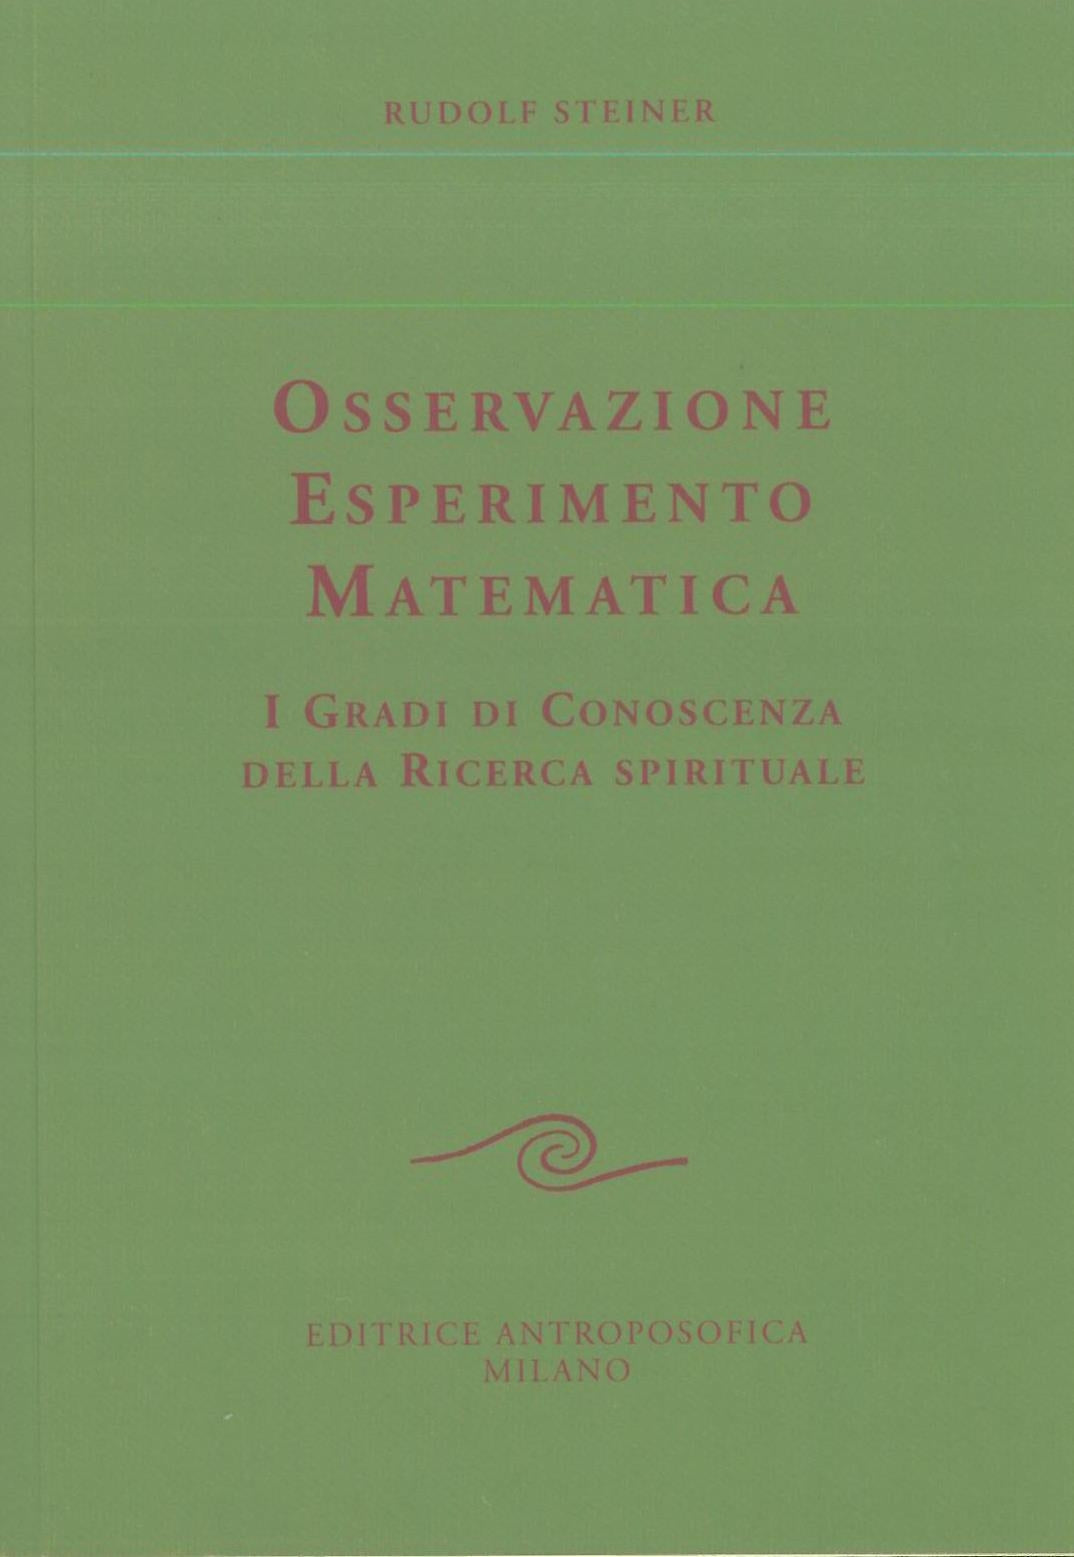 Osservazopne, esperimento, matematica - Rudolf Steiner